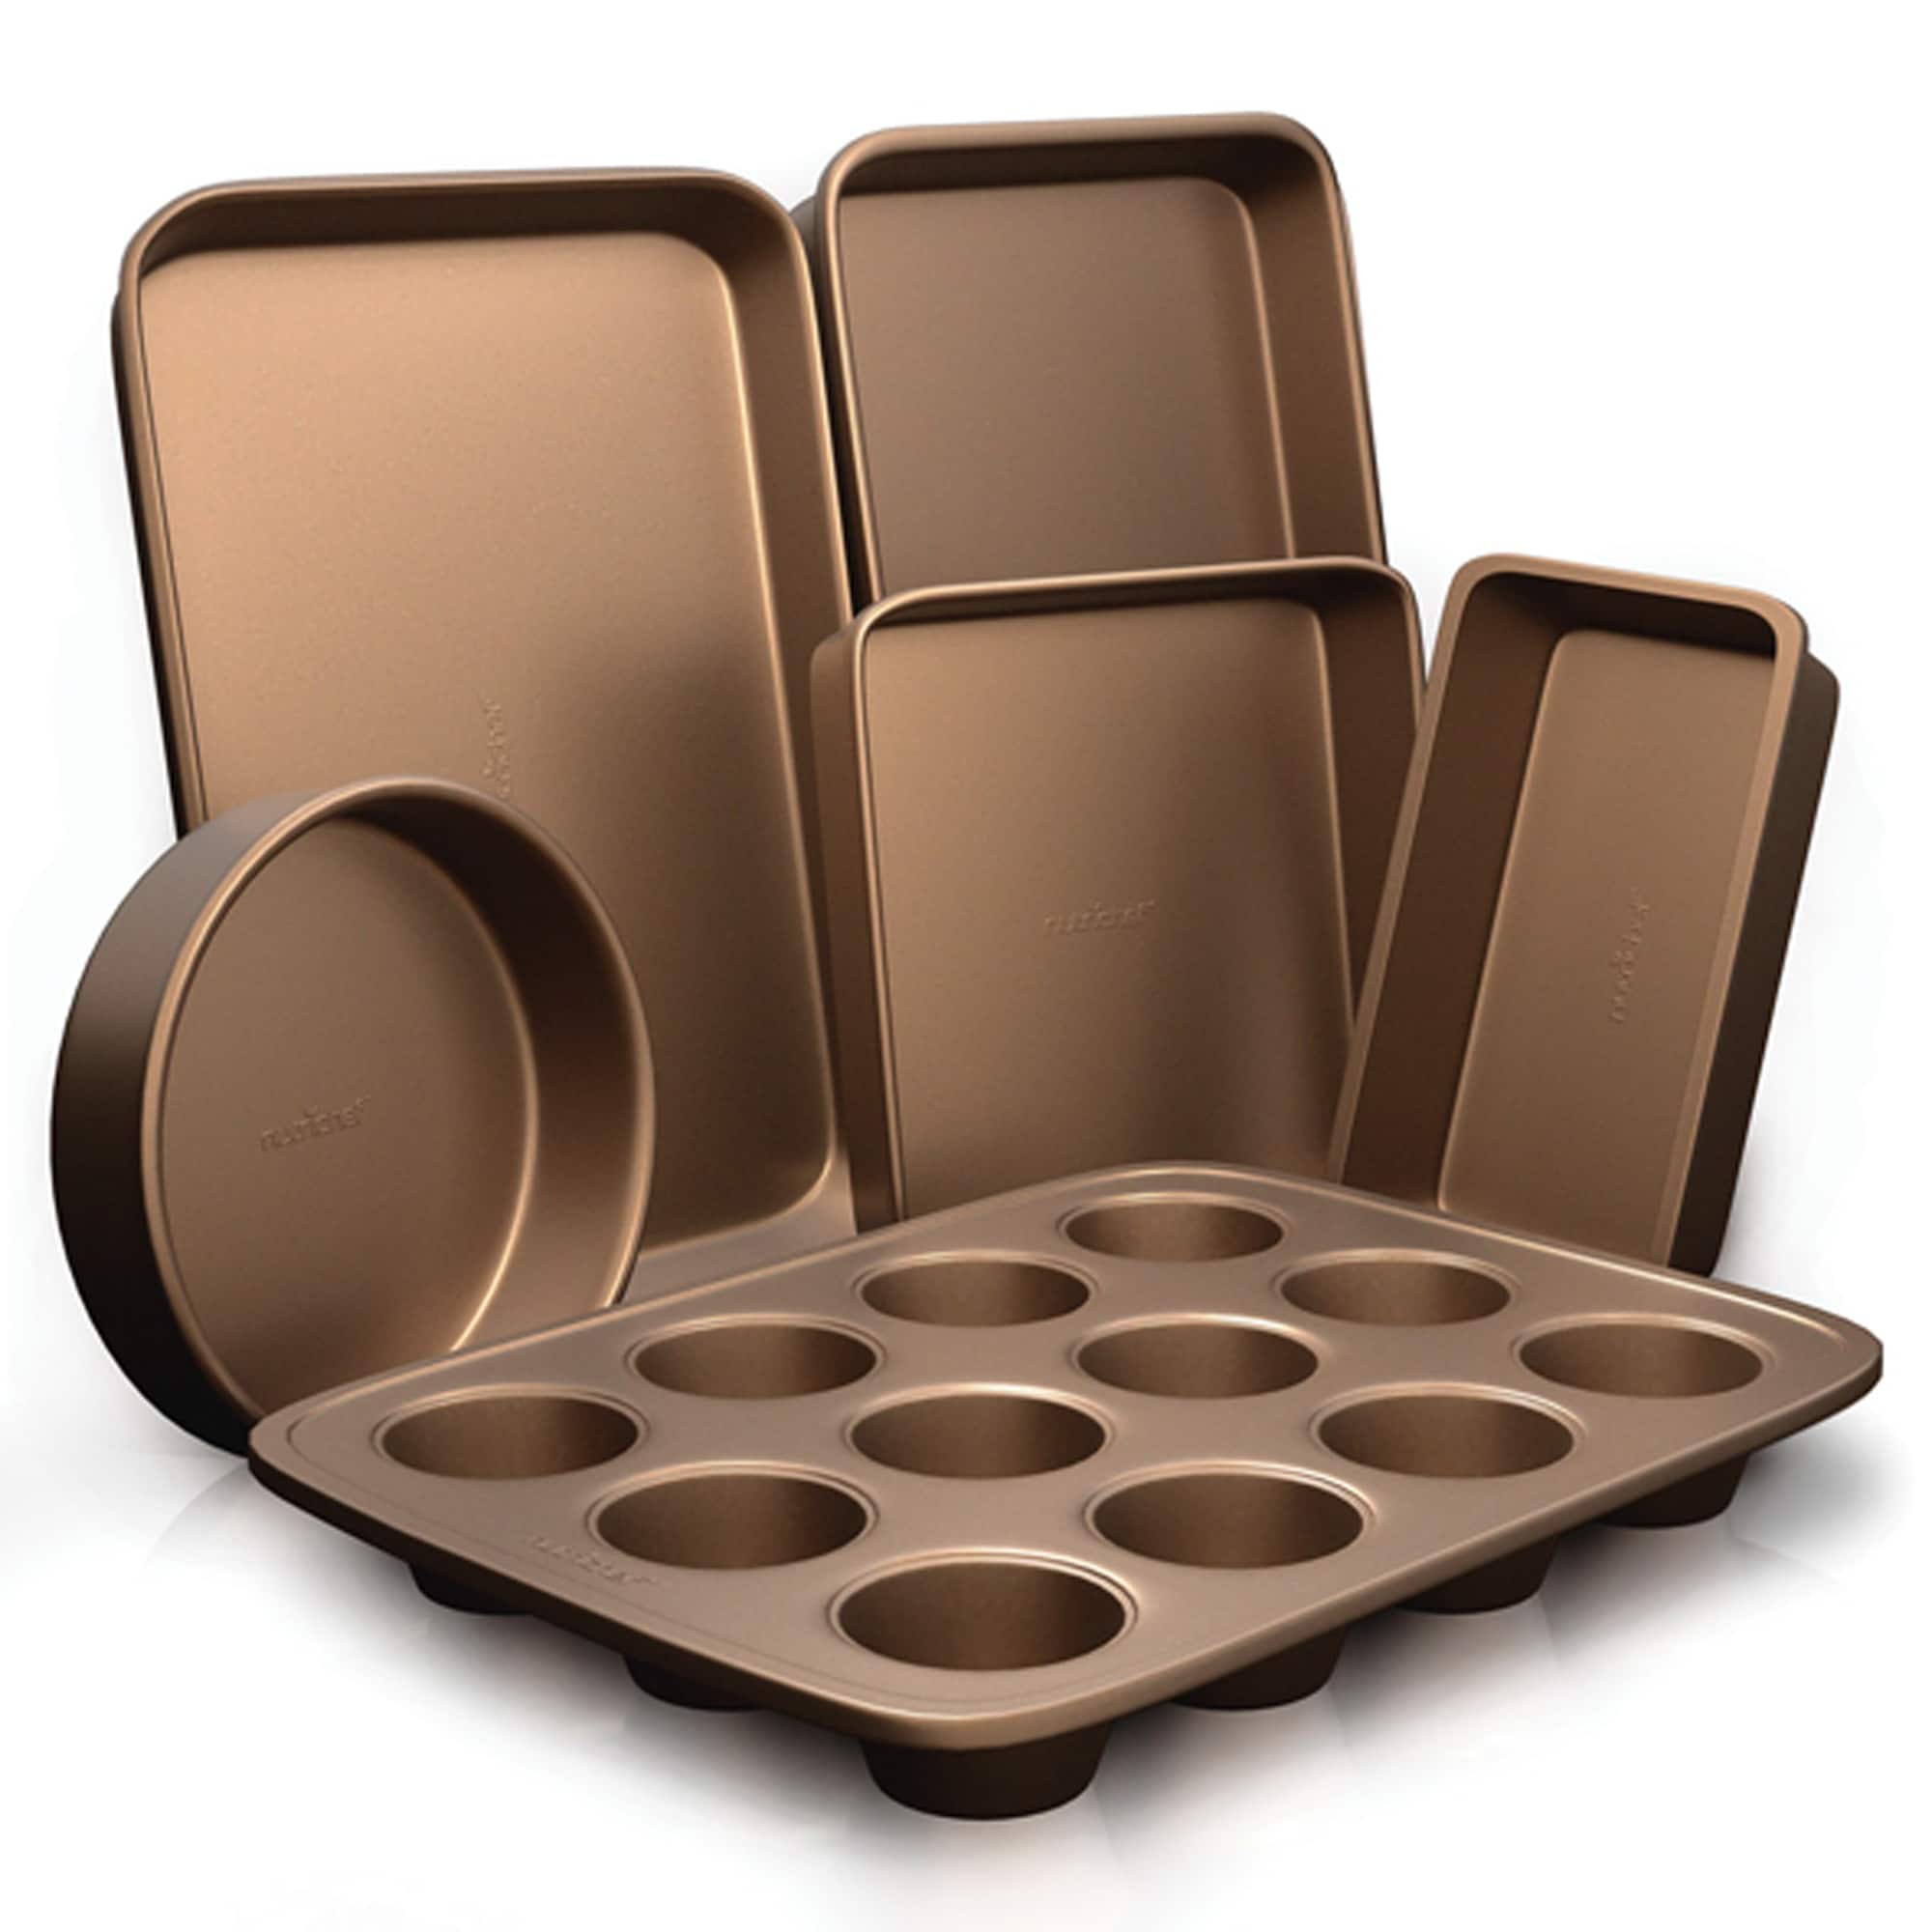 NutriChef Bronze Non-Stick Kitchen Bakeware Set